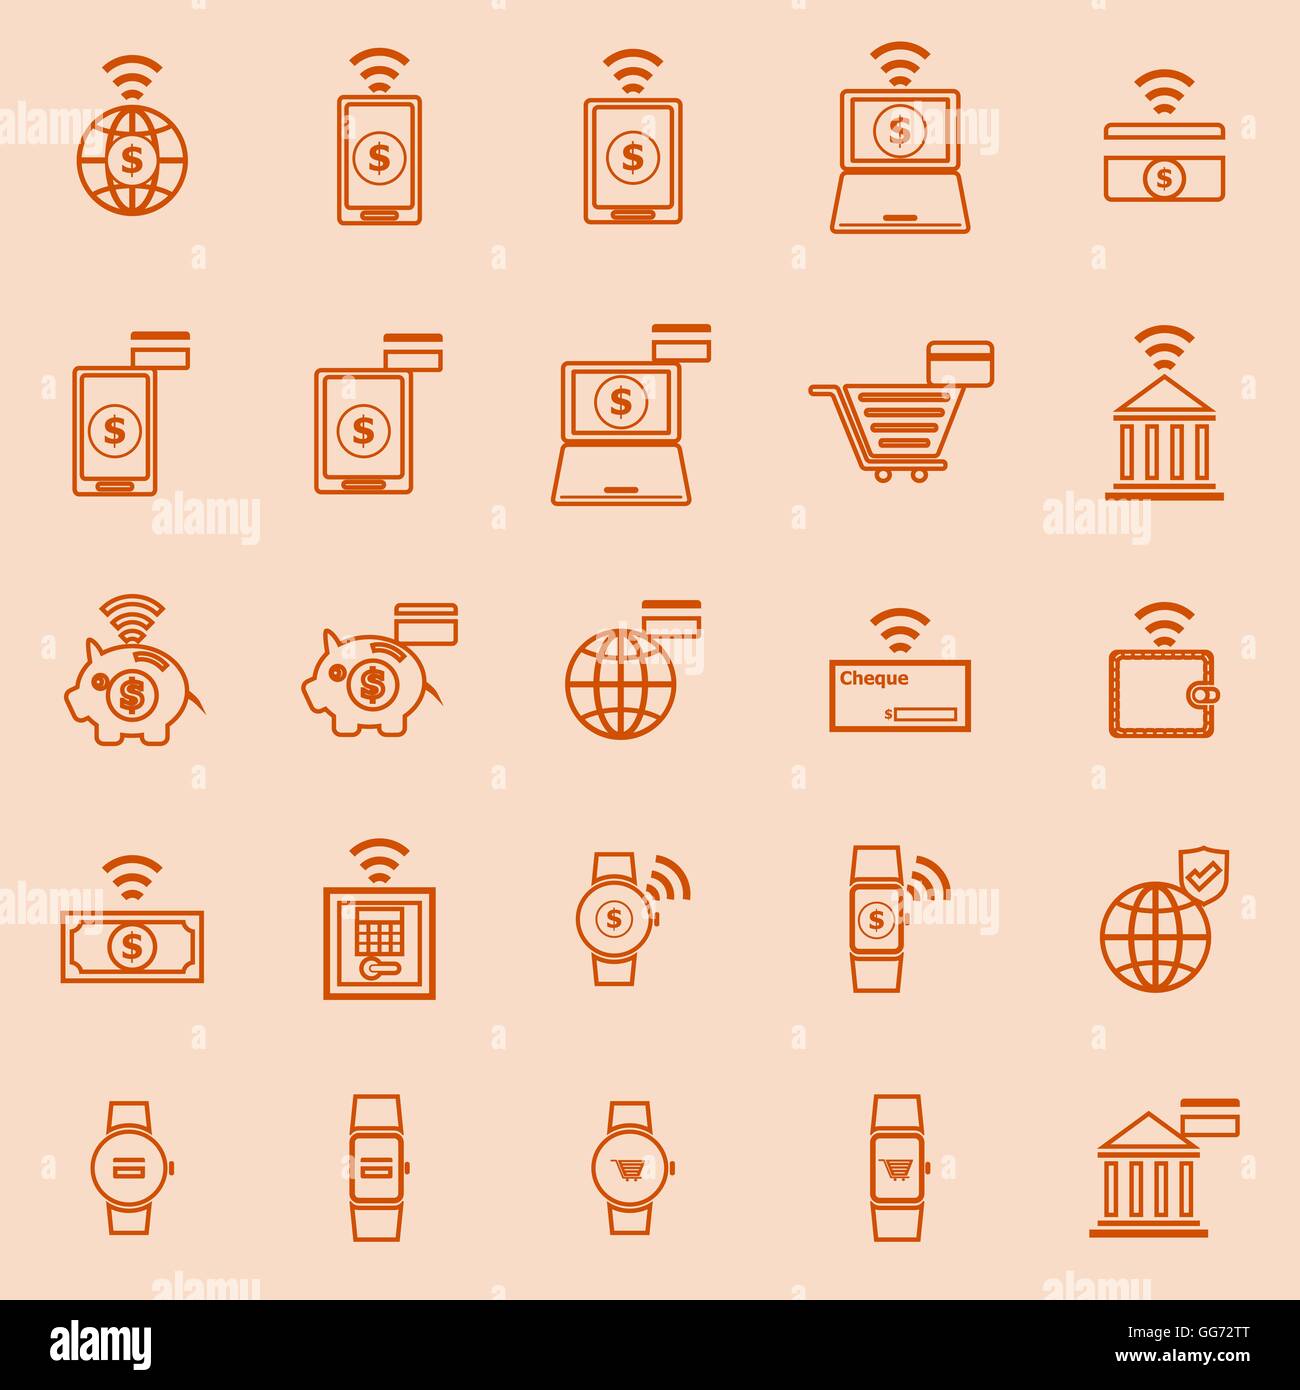 Fintech couleur de la ligne d'icônes sur fond orange, stock vector Illustration de Vecteur